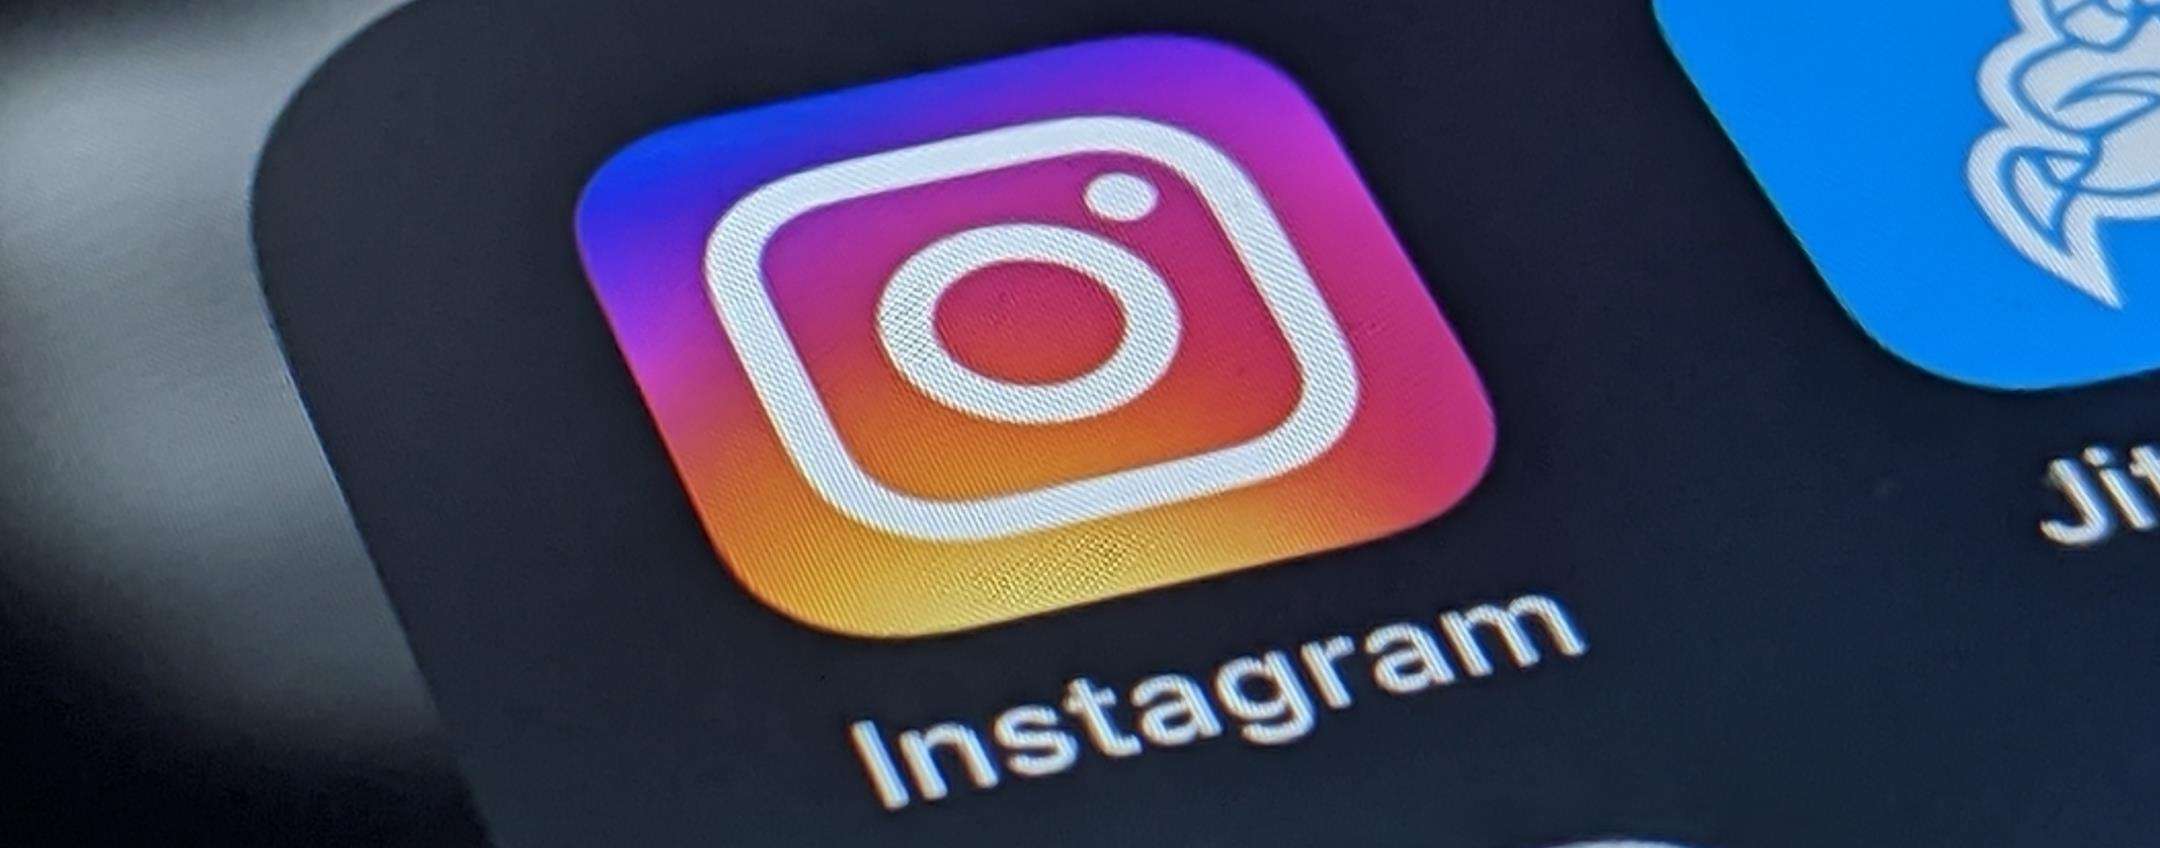 Instagram: come aggiungere fino a 5 link nella bio del profilo